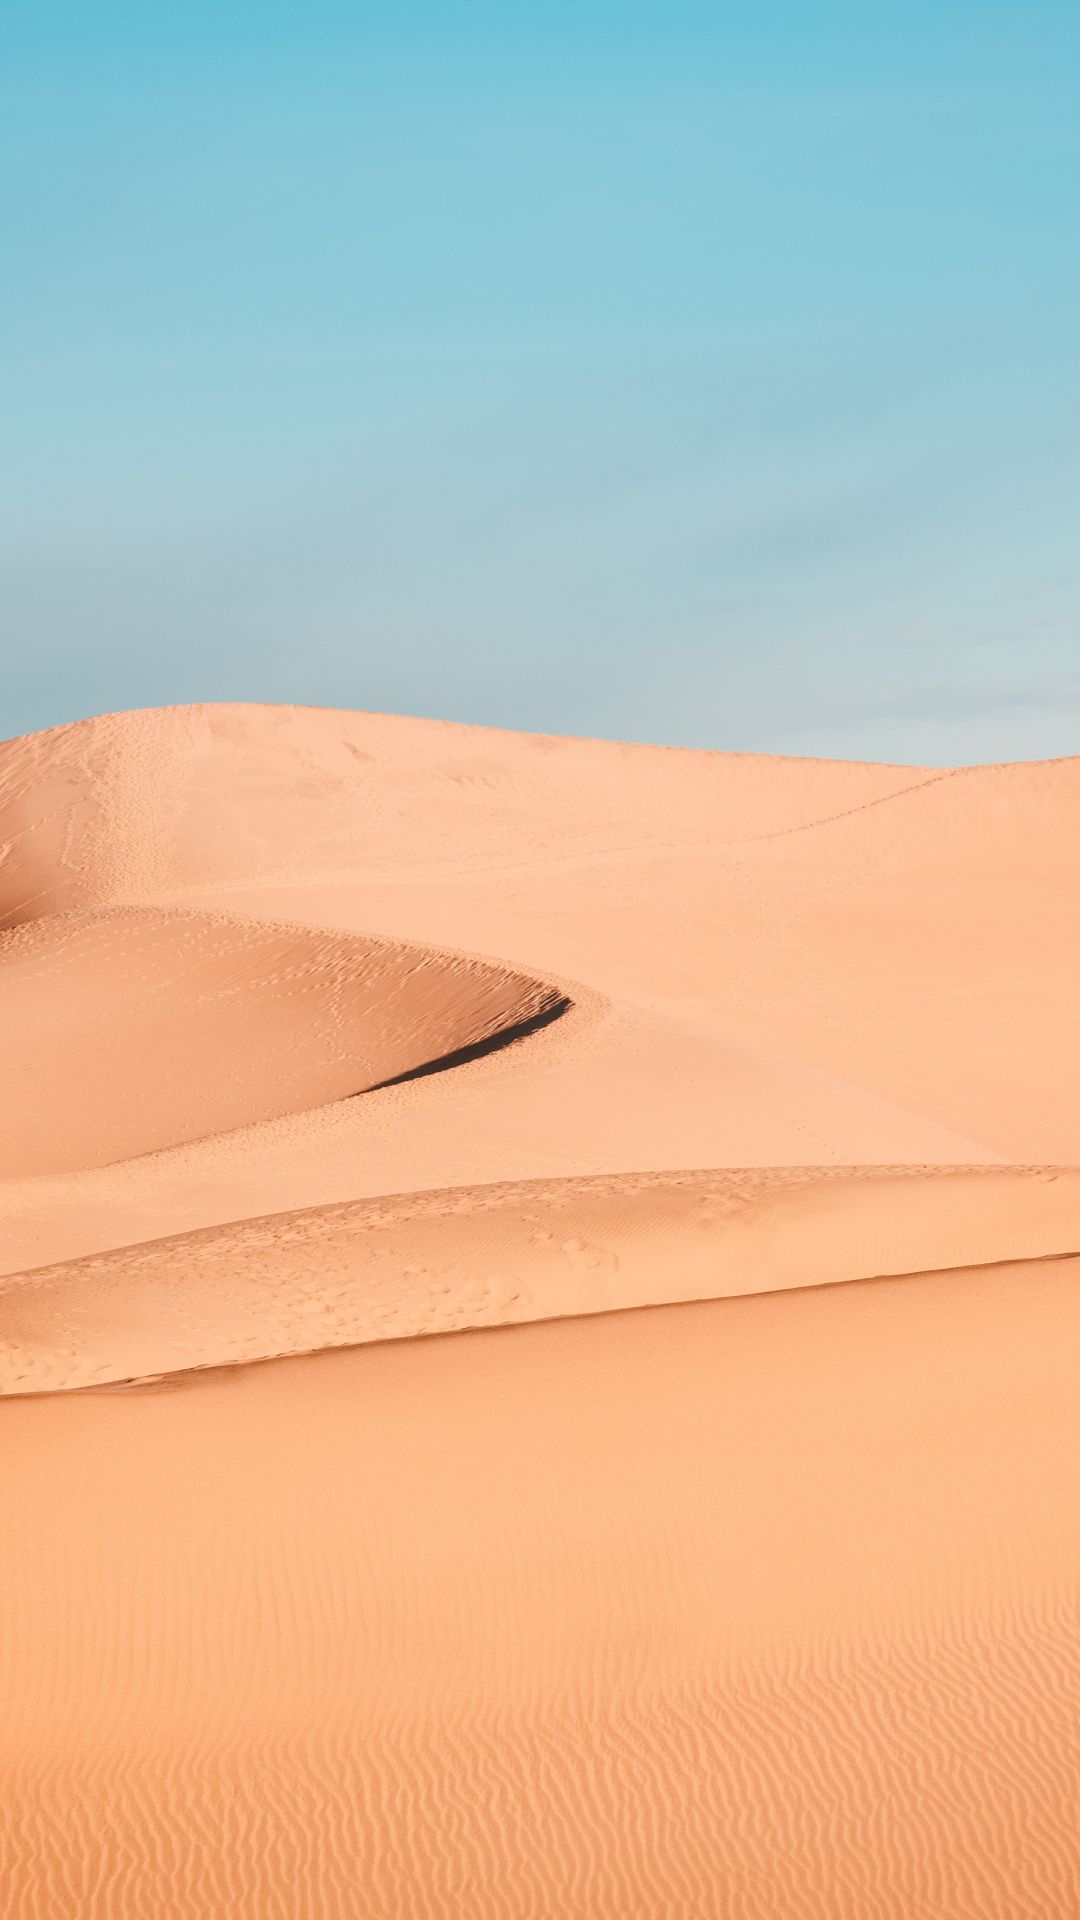 1080x1920 Sand, desert, dunes, landscape Wallpaper | Landscape wallpaper, Environment photography, Wallpaper